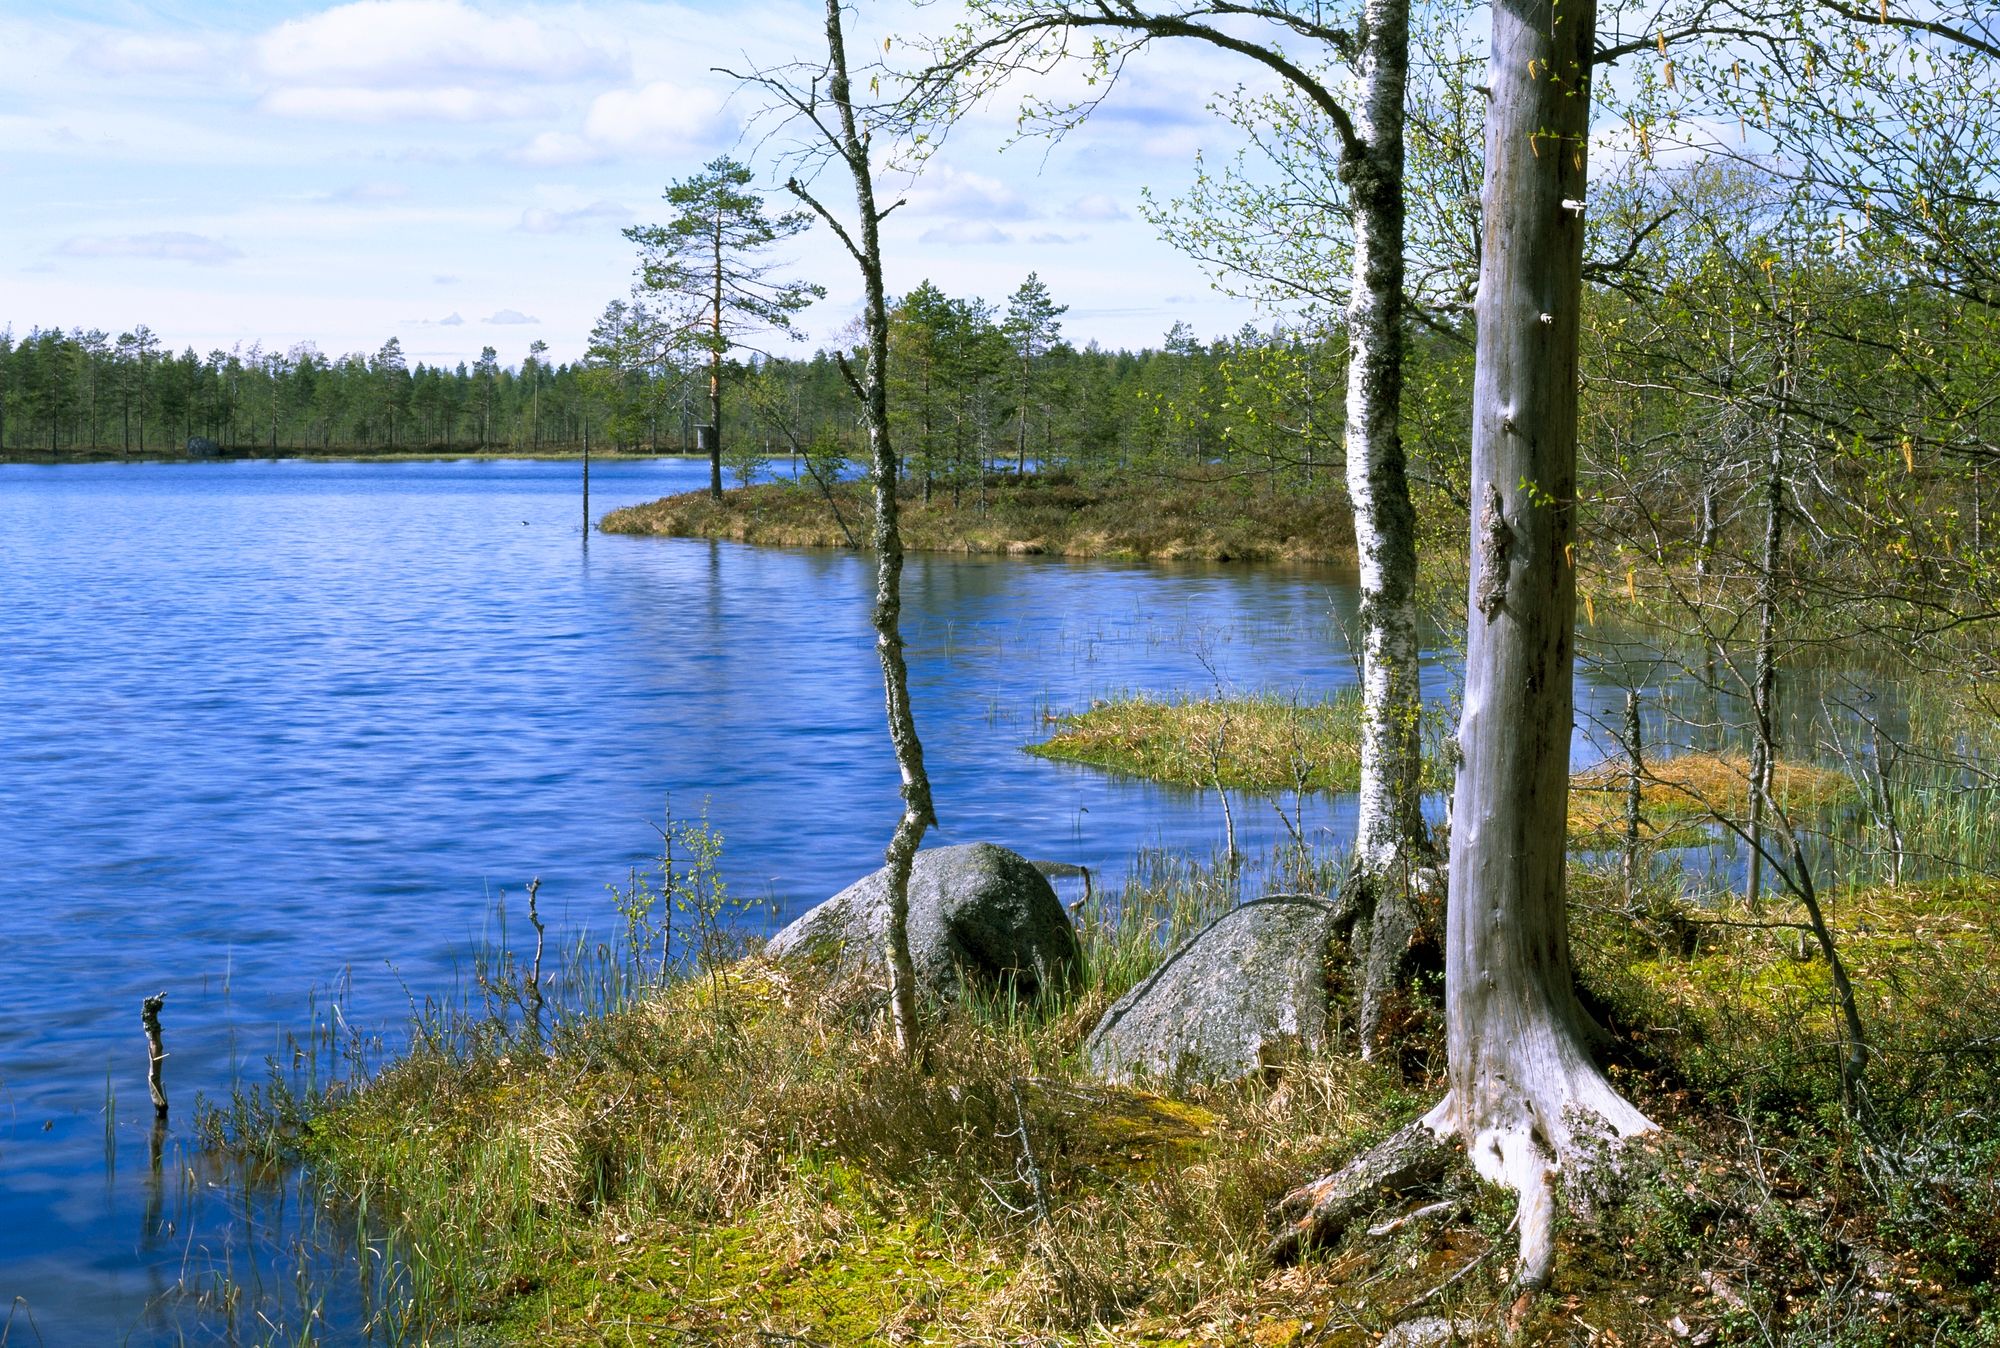 Lähdepohjaisen Spitaalijärven vettä vietiin aikoinaan Venäjälle asti, koska sen uskottiin parantavan sairauksia, jopa spitaalia. Lauhanvuoren kansallispuisto. Kuva: Timo Nieminen